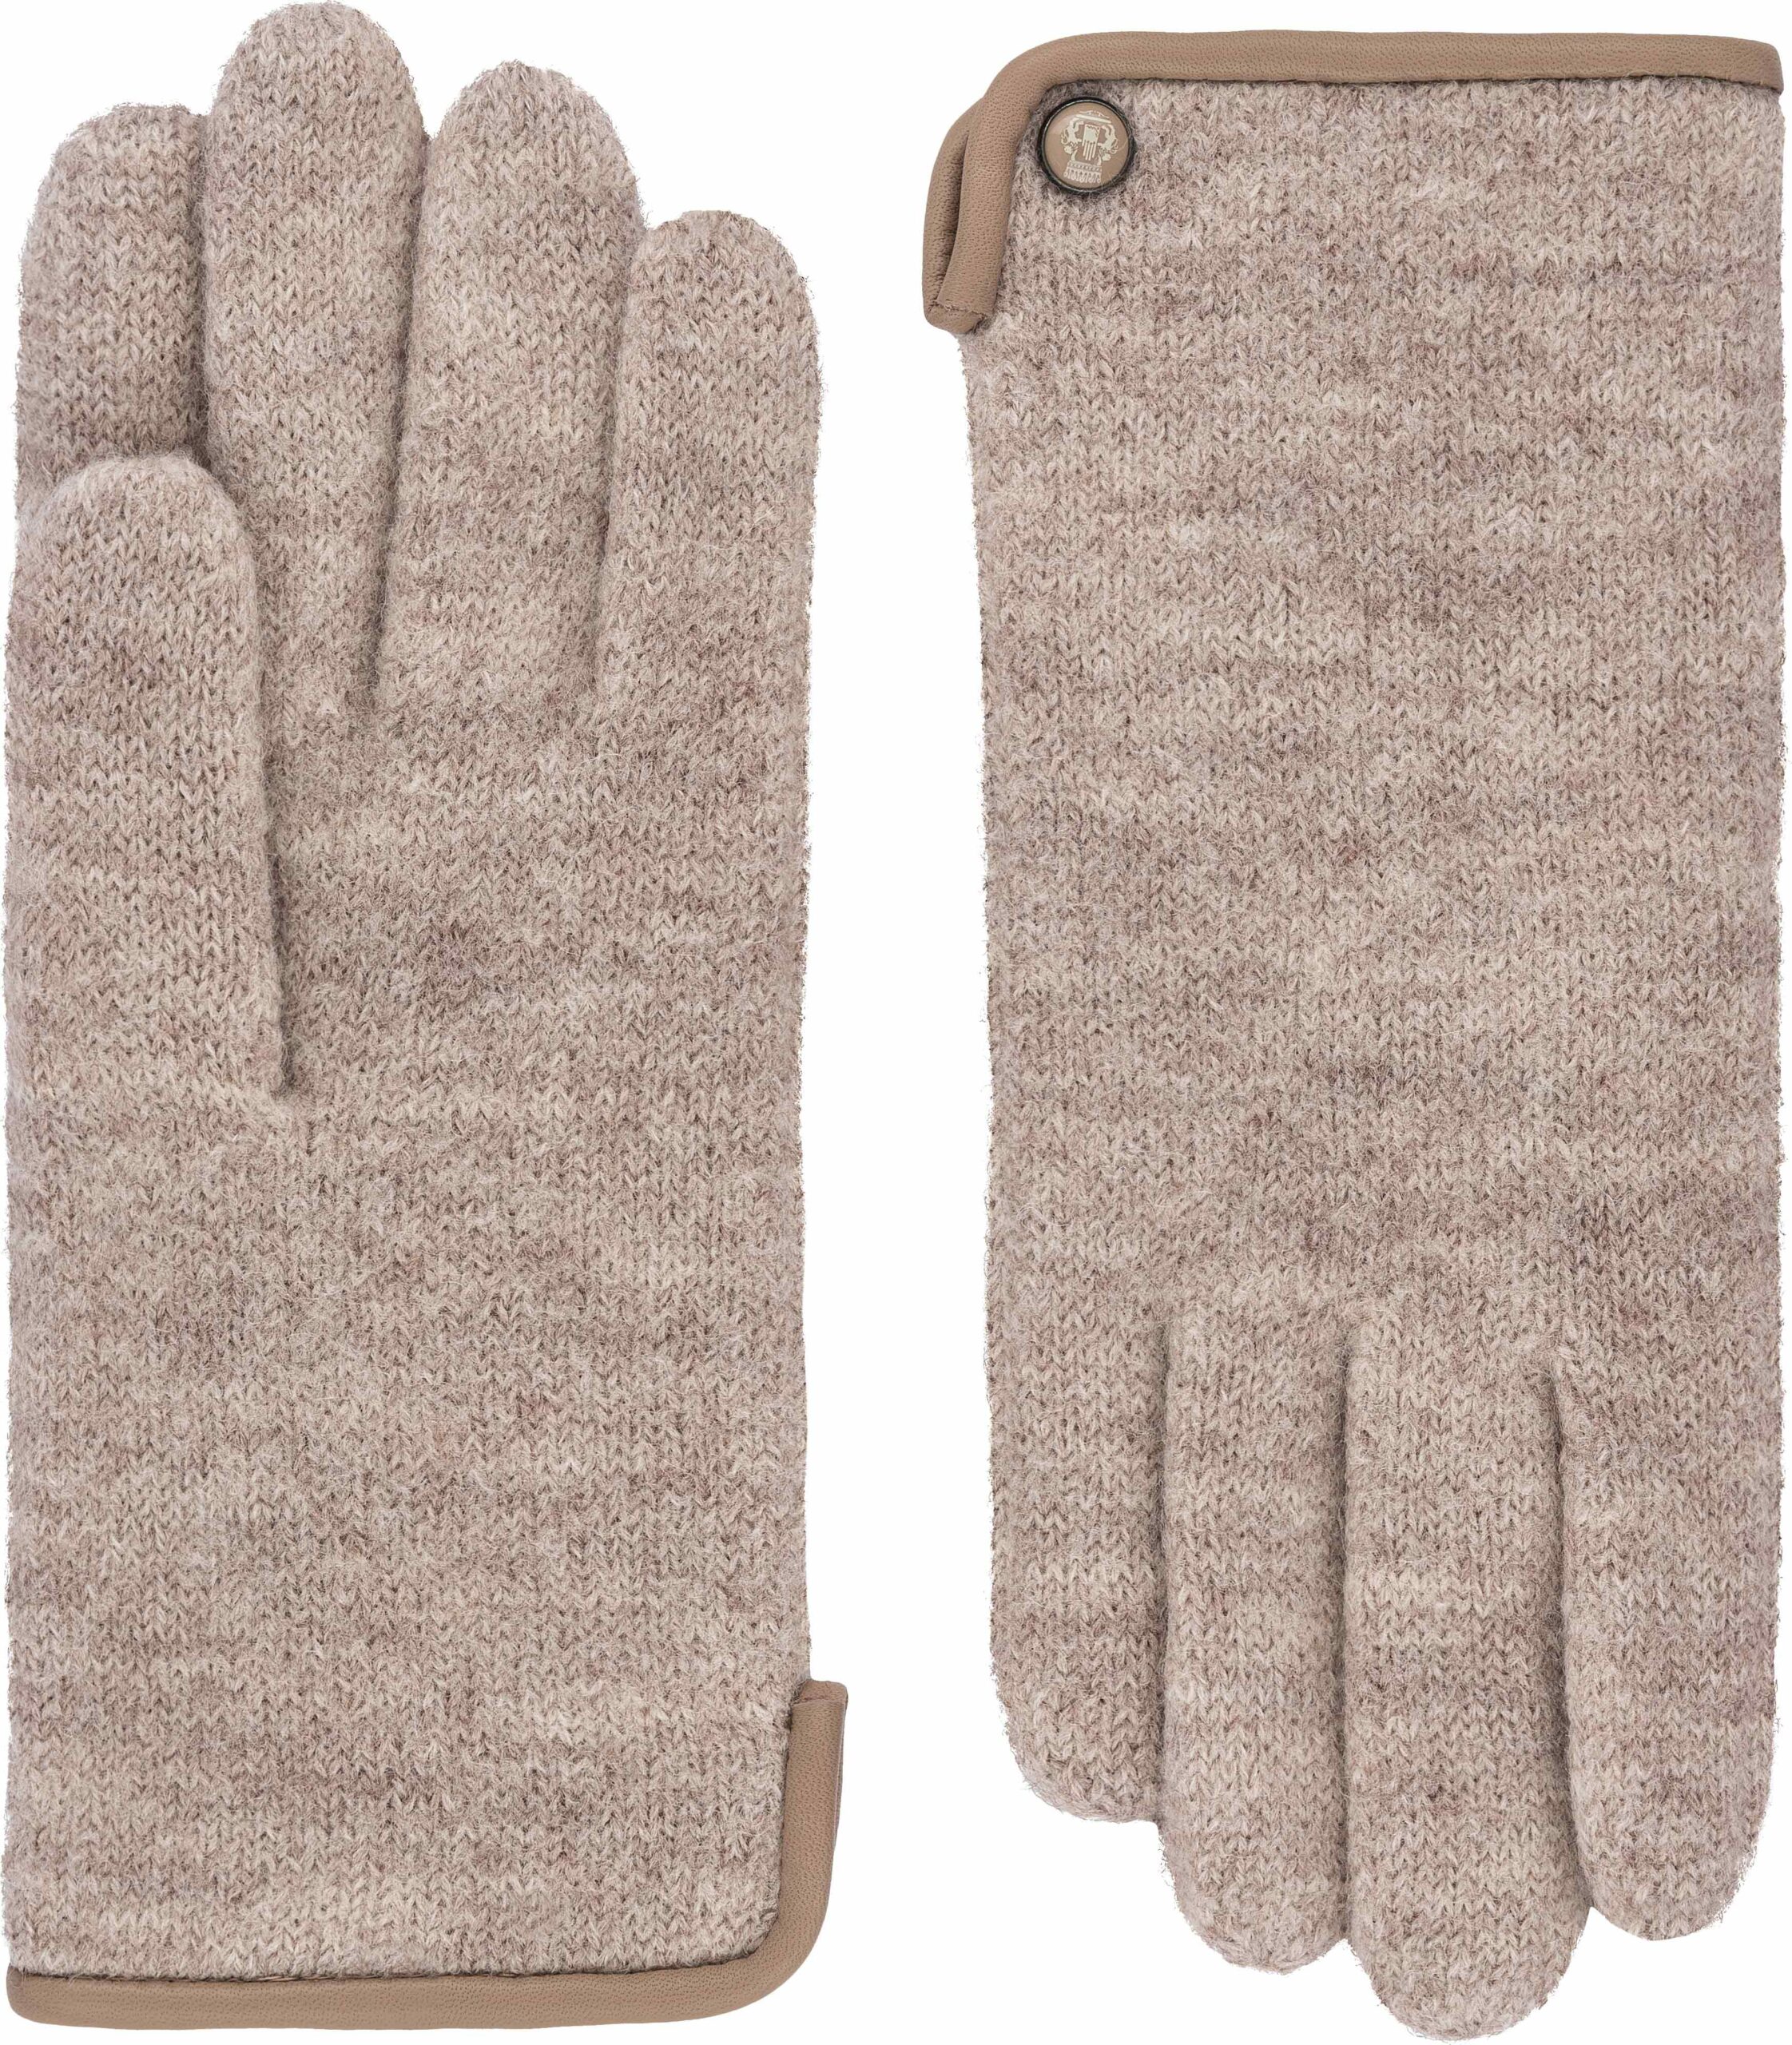 Walk-Handschuhe von Roeckl - Lederstrumpf Braunschweig | Handschuhe